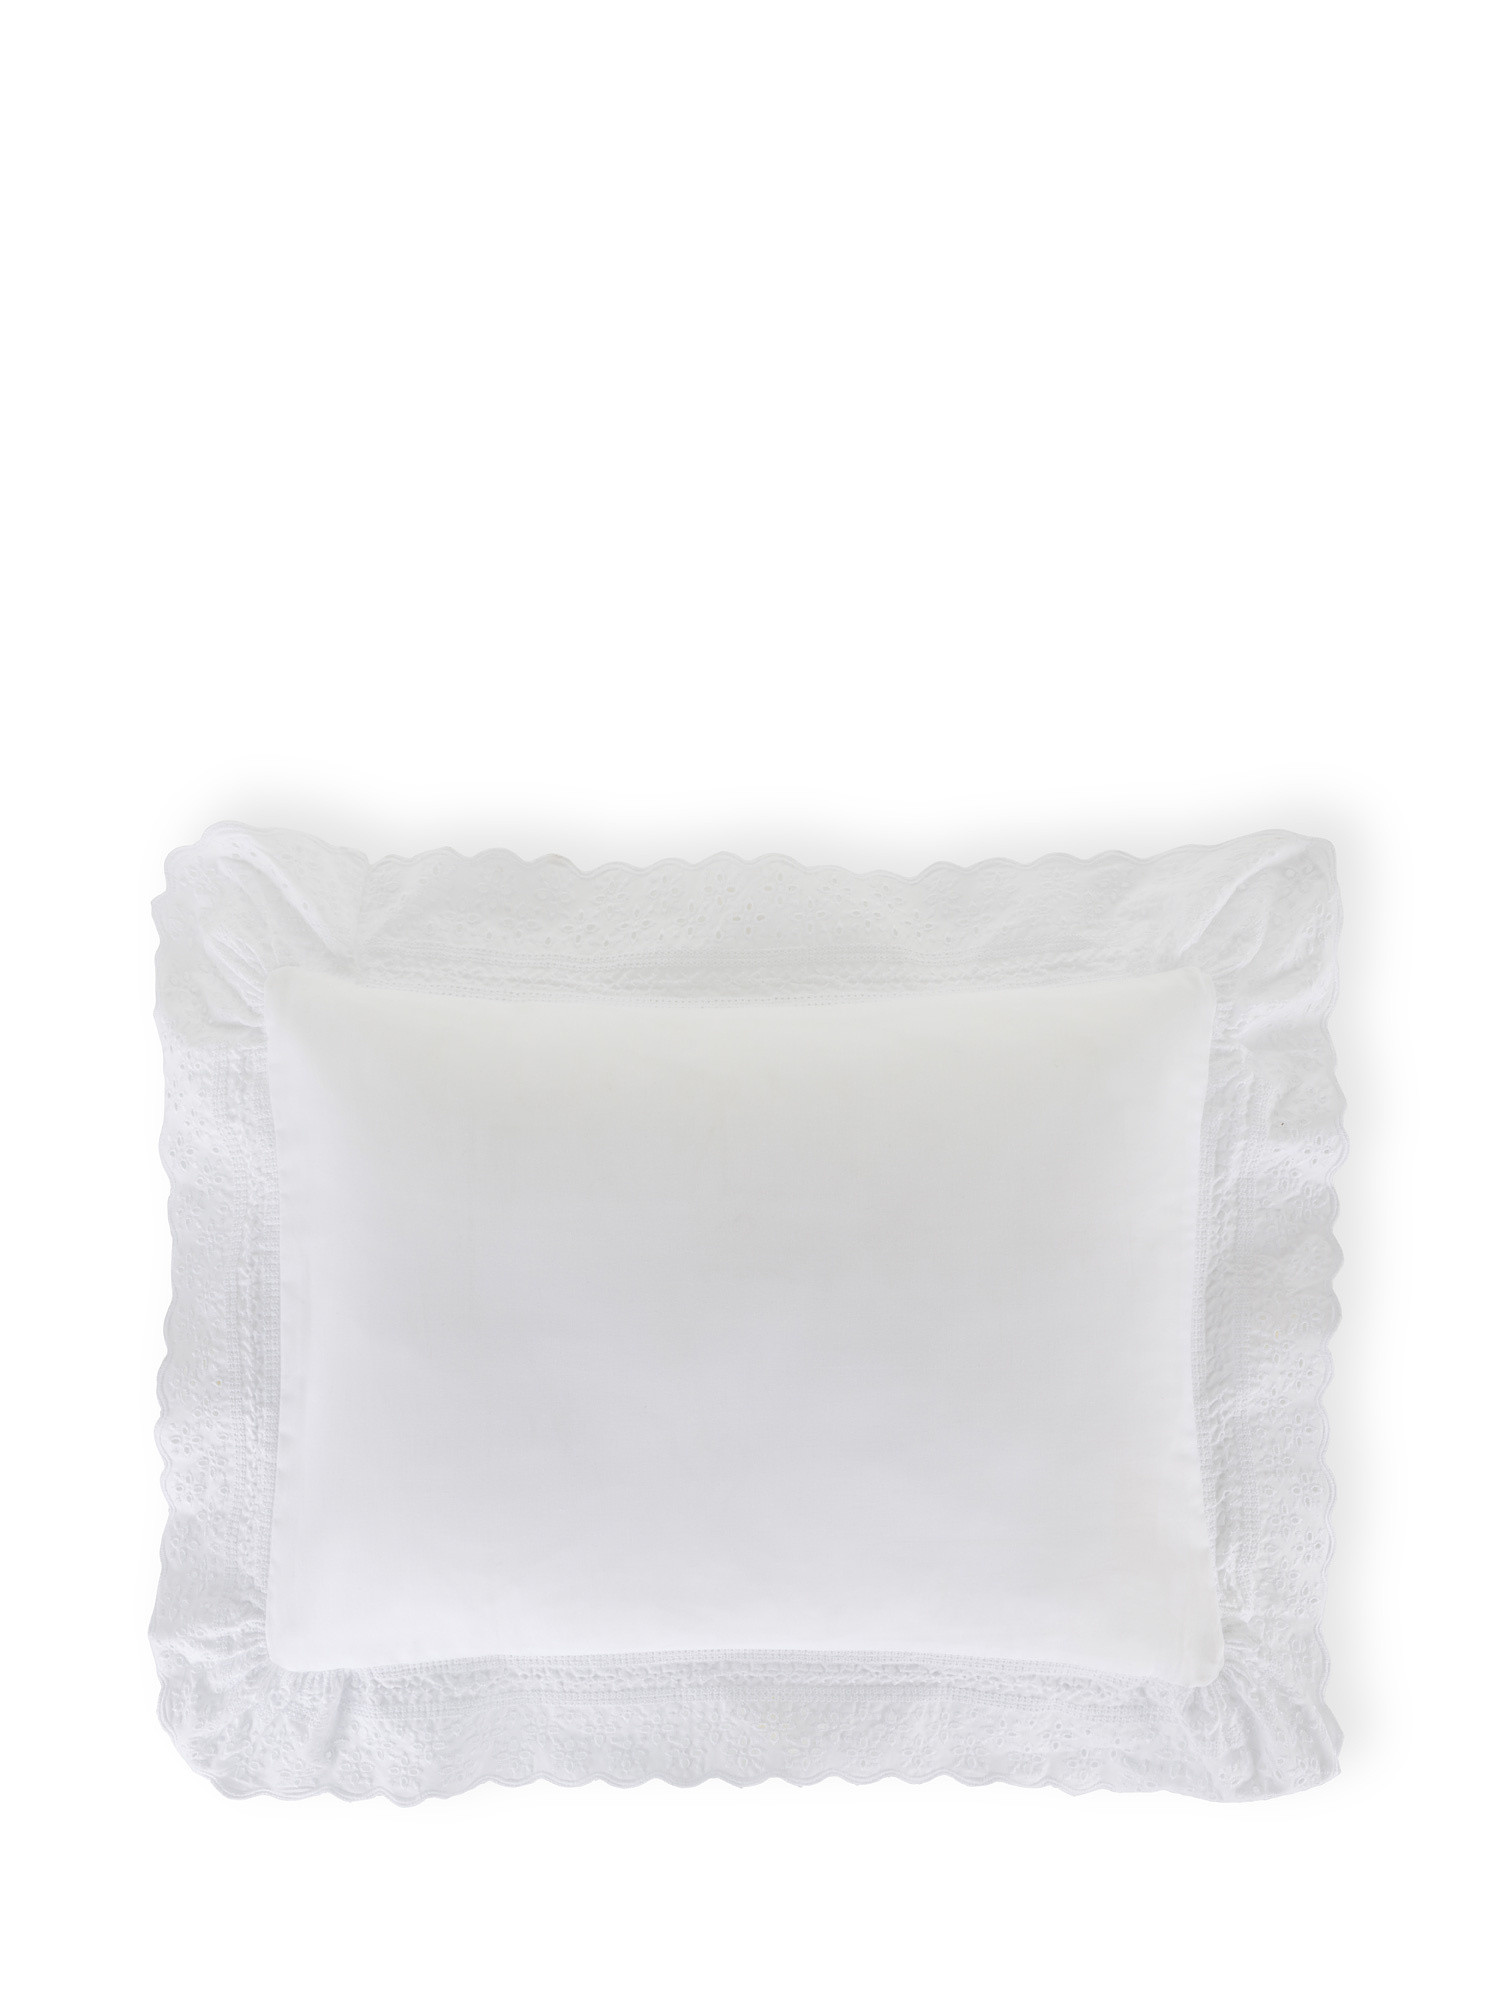 Portofino cushion with Sangallo lace edging, White, large image number 0